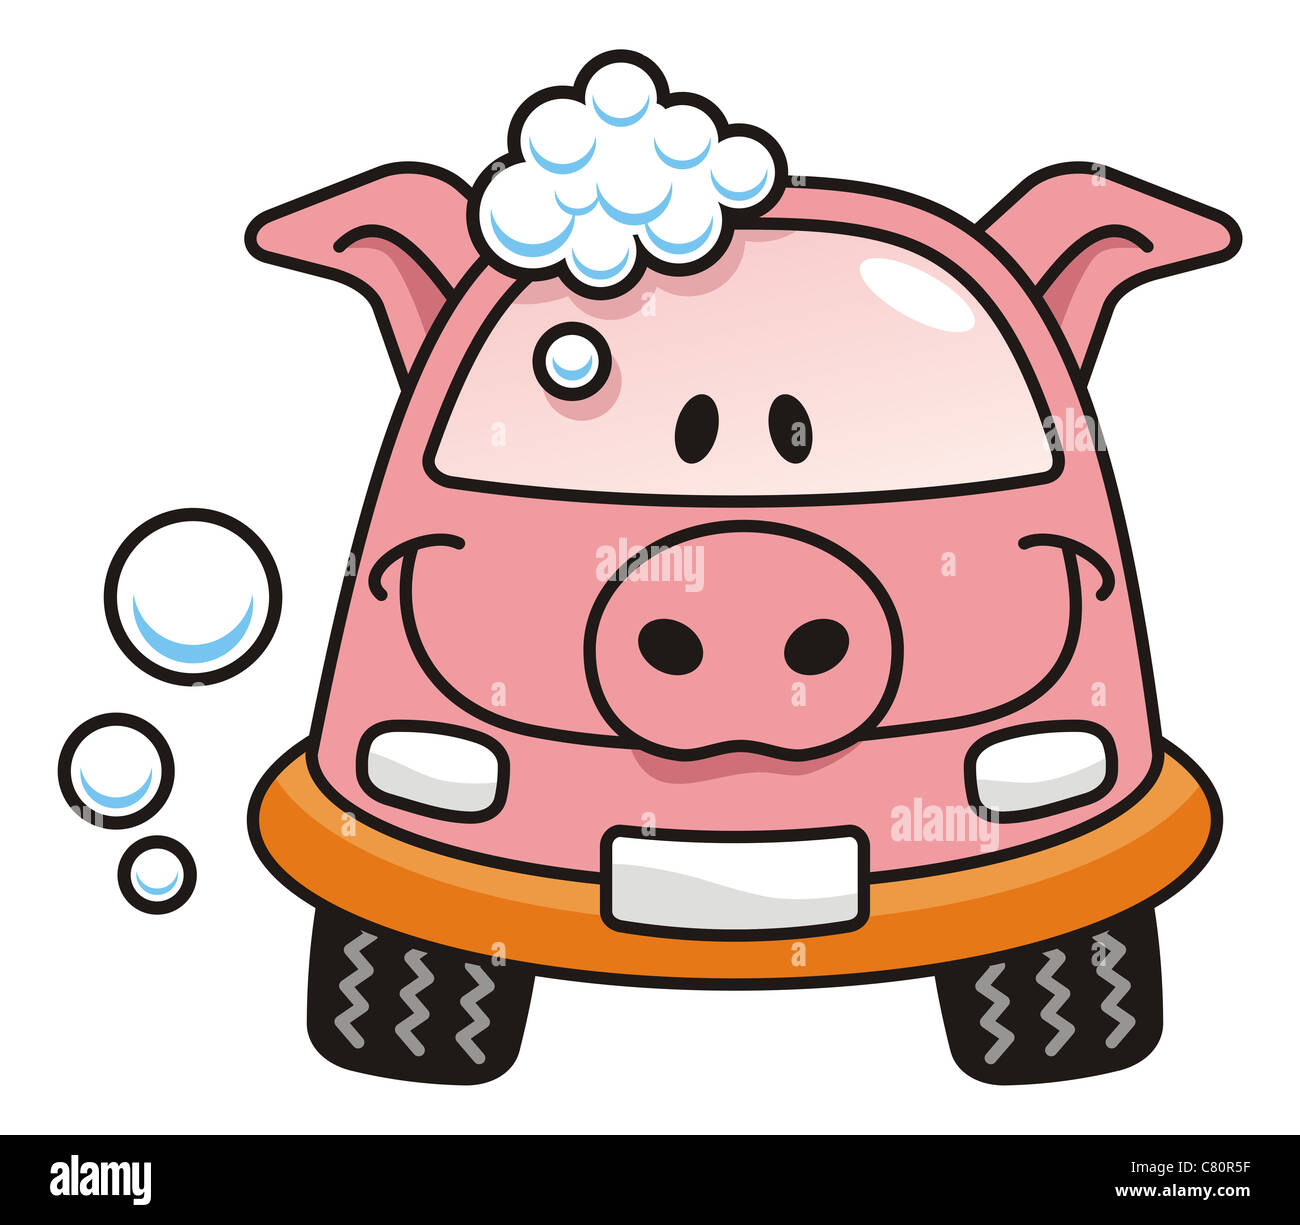 Un dessin animé cochon avec des bulles de savon de lavage de voiture Banque D'Images